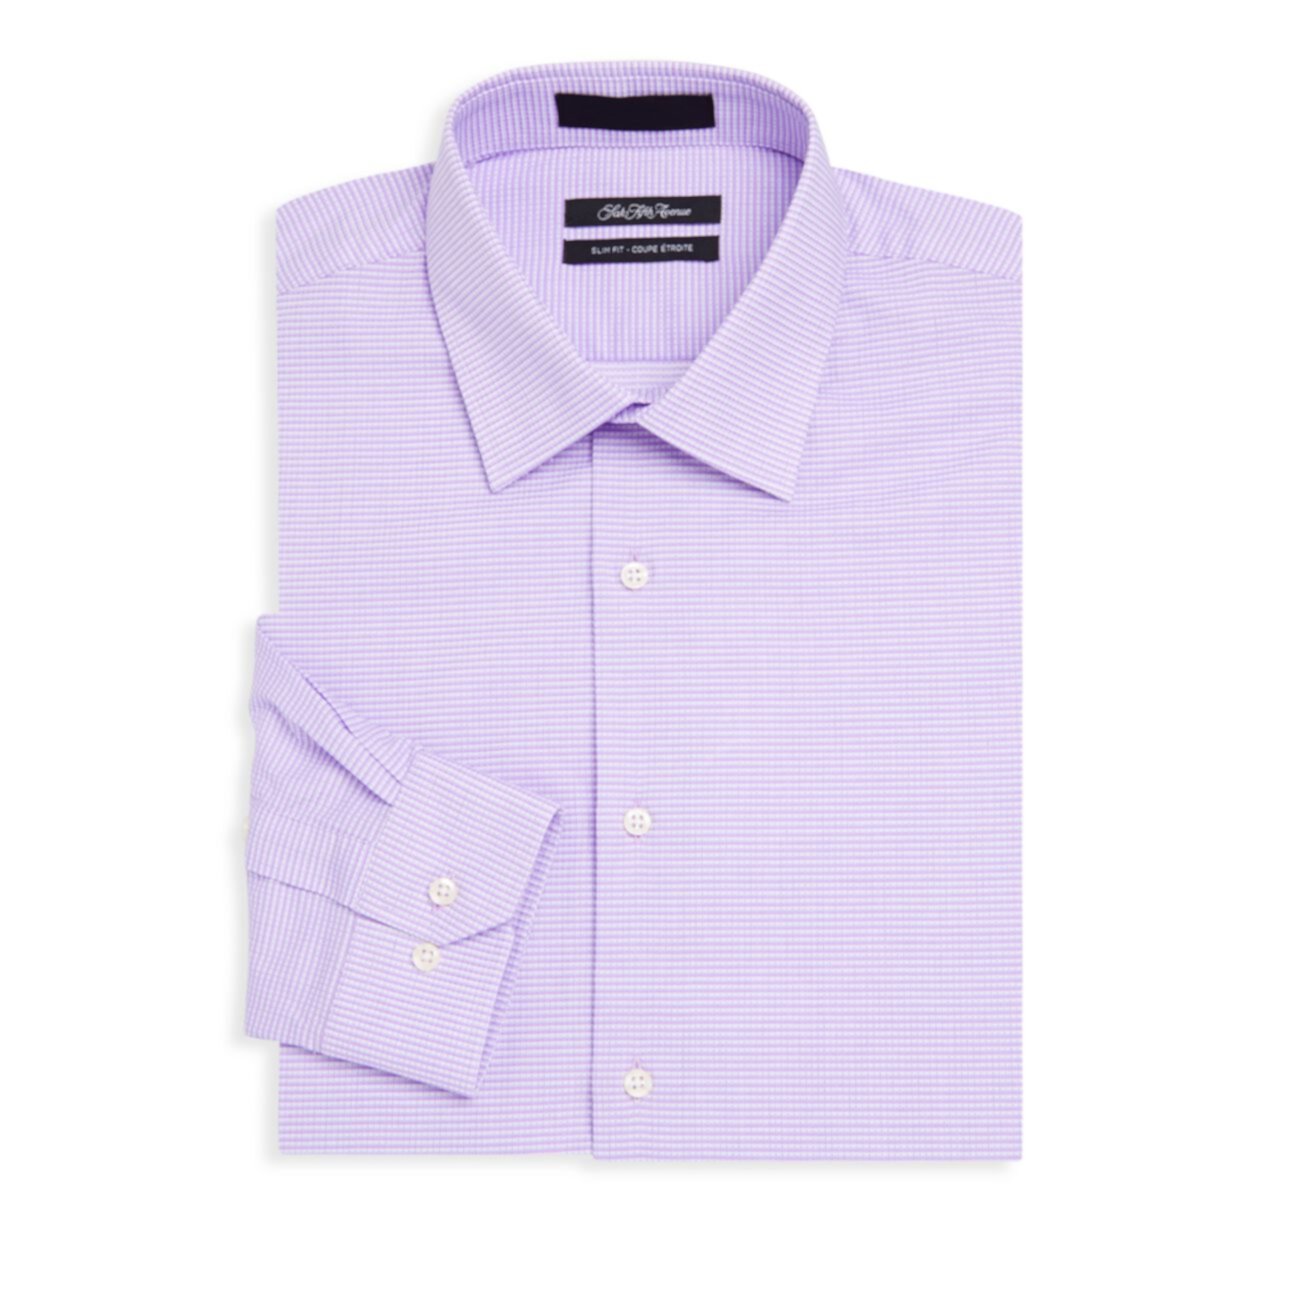 Хлопковая классическая рубашка узкого кроя с двусторонней полоской Saks Fifth Avenue